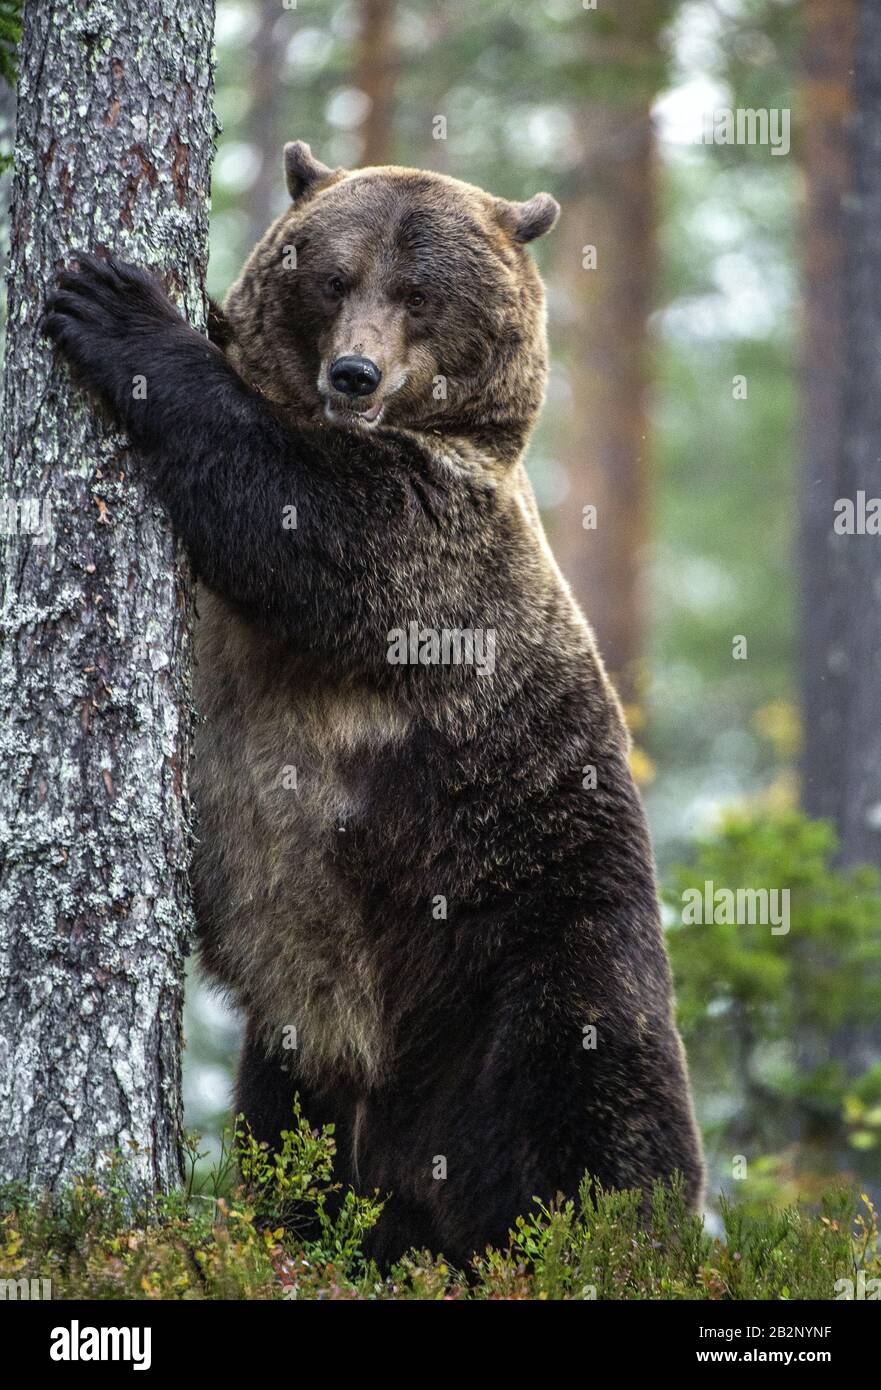 L'ours brun se tient sur ses pattes arrière par un arbre dans une forêt de pins. Nom scientifique: Ursus arctos. Habitat naturel. Saison d'automne. Banque D'Images